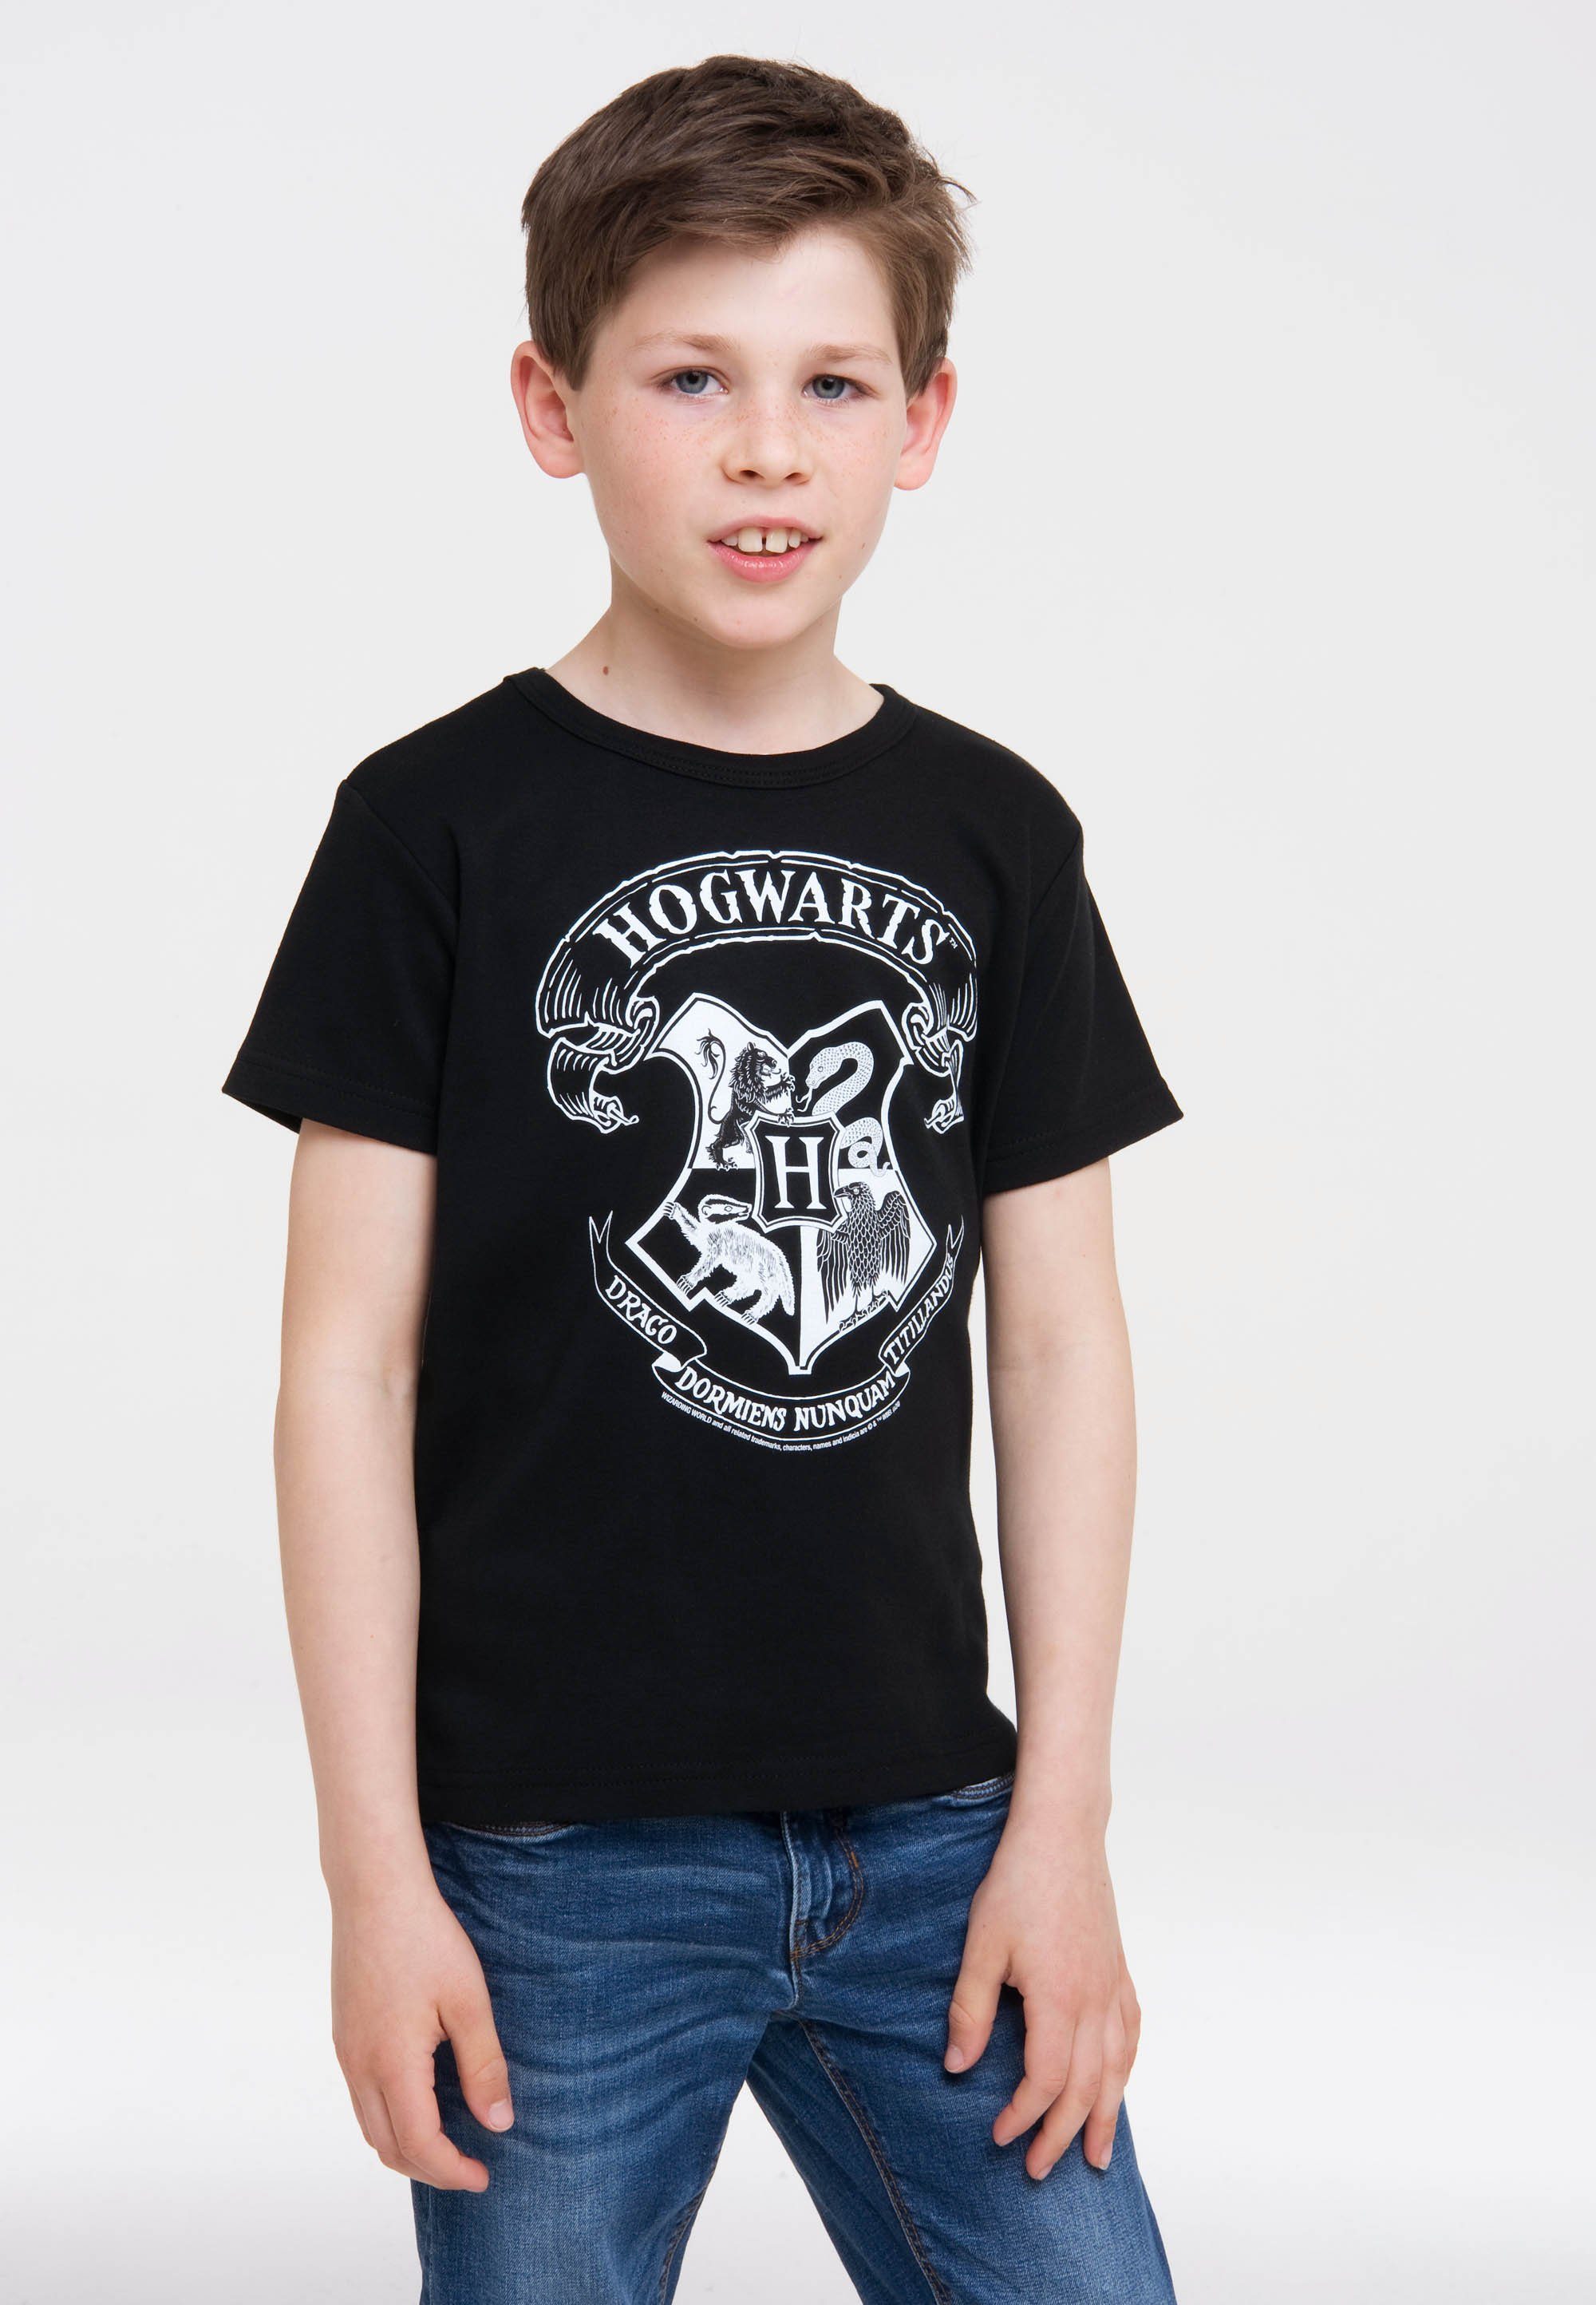 LOGOSHIRT T-Shirt Harry lizenziertem Potter (Weiß) - Originaldesign mit Logo Hogwarts